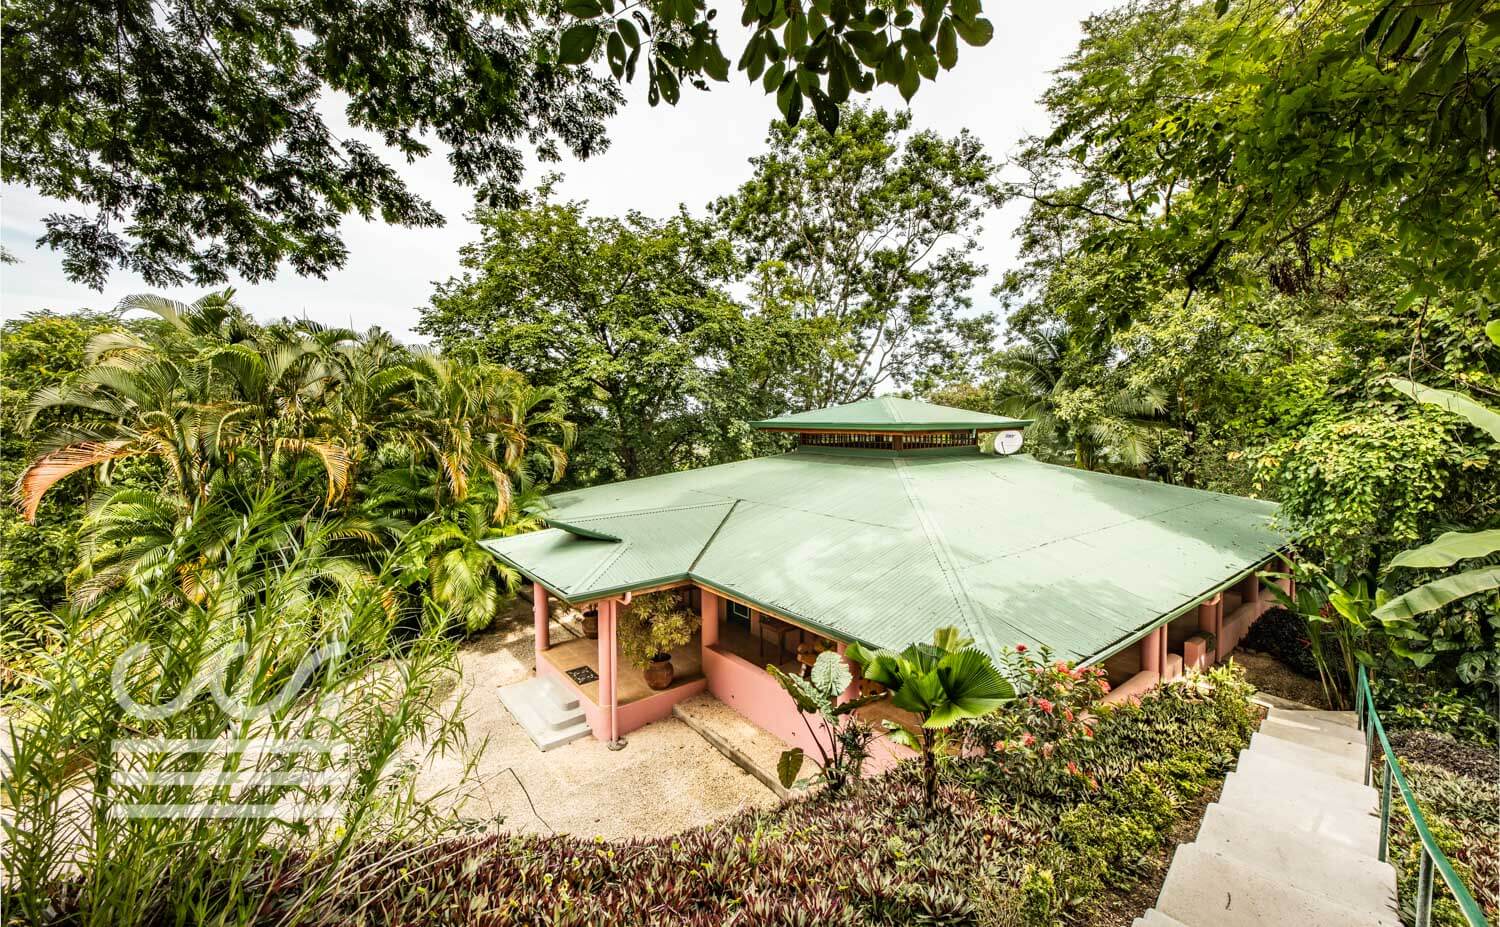 Casa-Nadine-Wanderlust-Realty-Real-Estate-Retals-Nosara-Costa-Rica-13.jpg